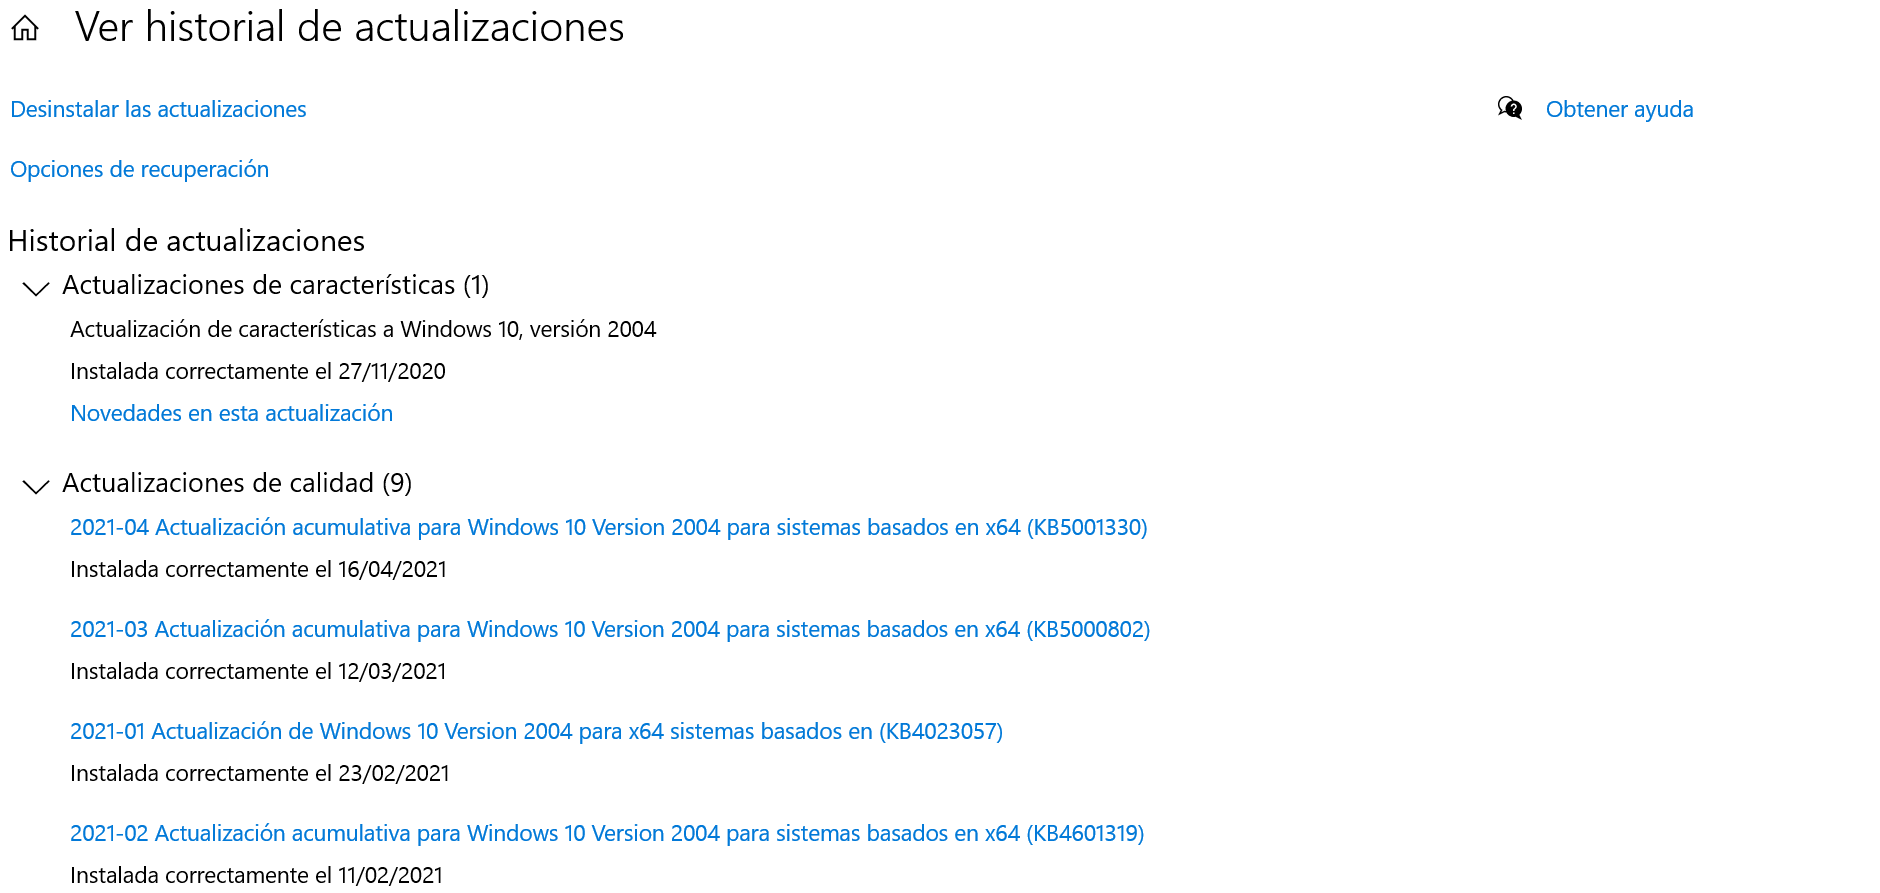 Historial de actualizaciones Windows 10